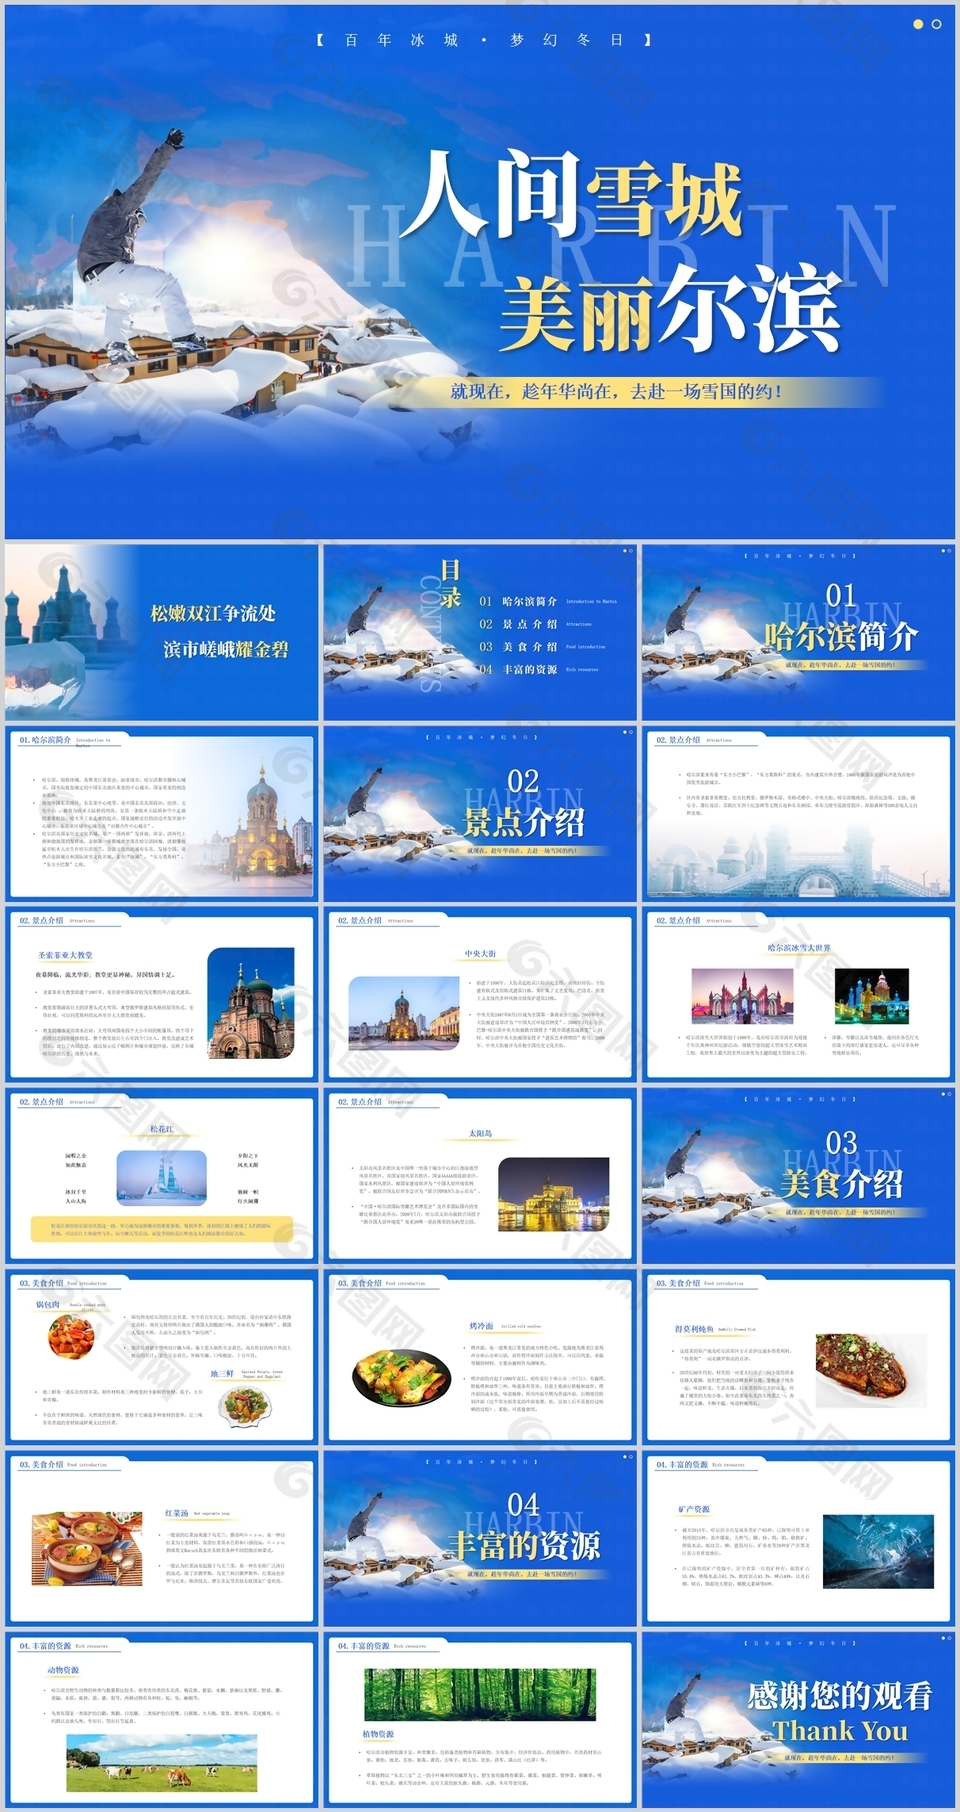 人间雪城美丽尔滨旅游宣传介绍PPT模板